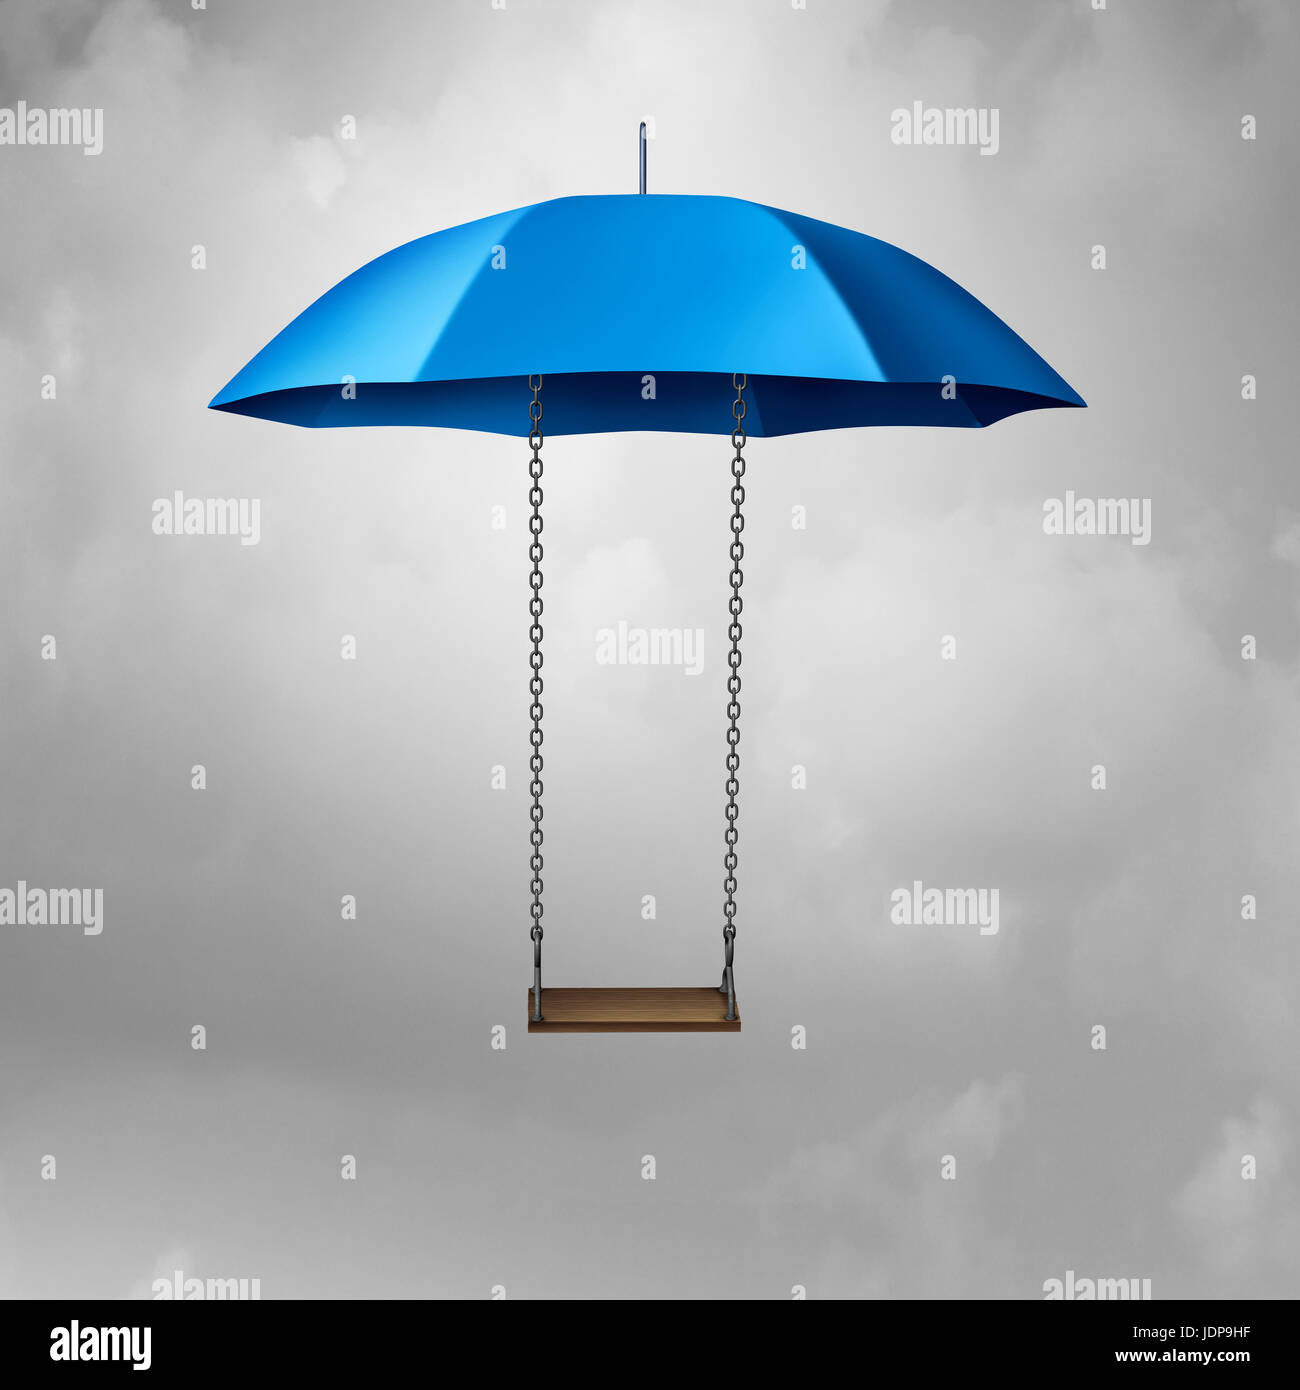 Kindheit Schutz und Kind Sicherheitssymbol wie ein Regenschirm mit einem Schwung zu schützen und bietet Sicherheit und Schutz für gefährdete Jugendliche. Stockfoto